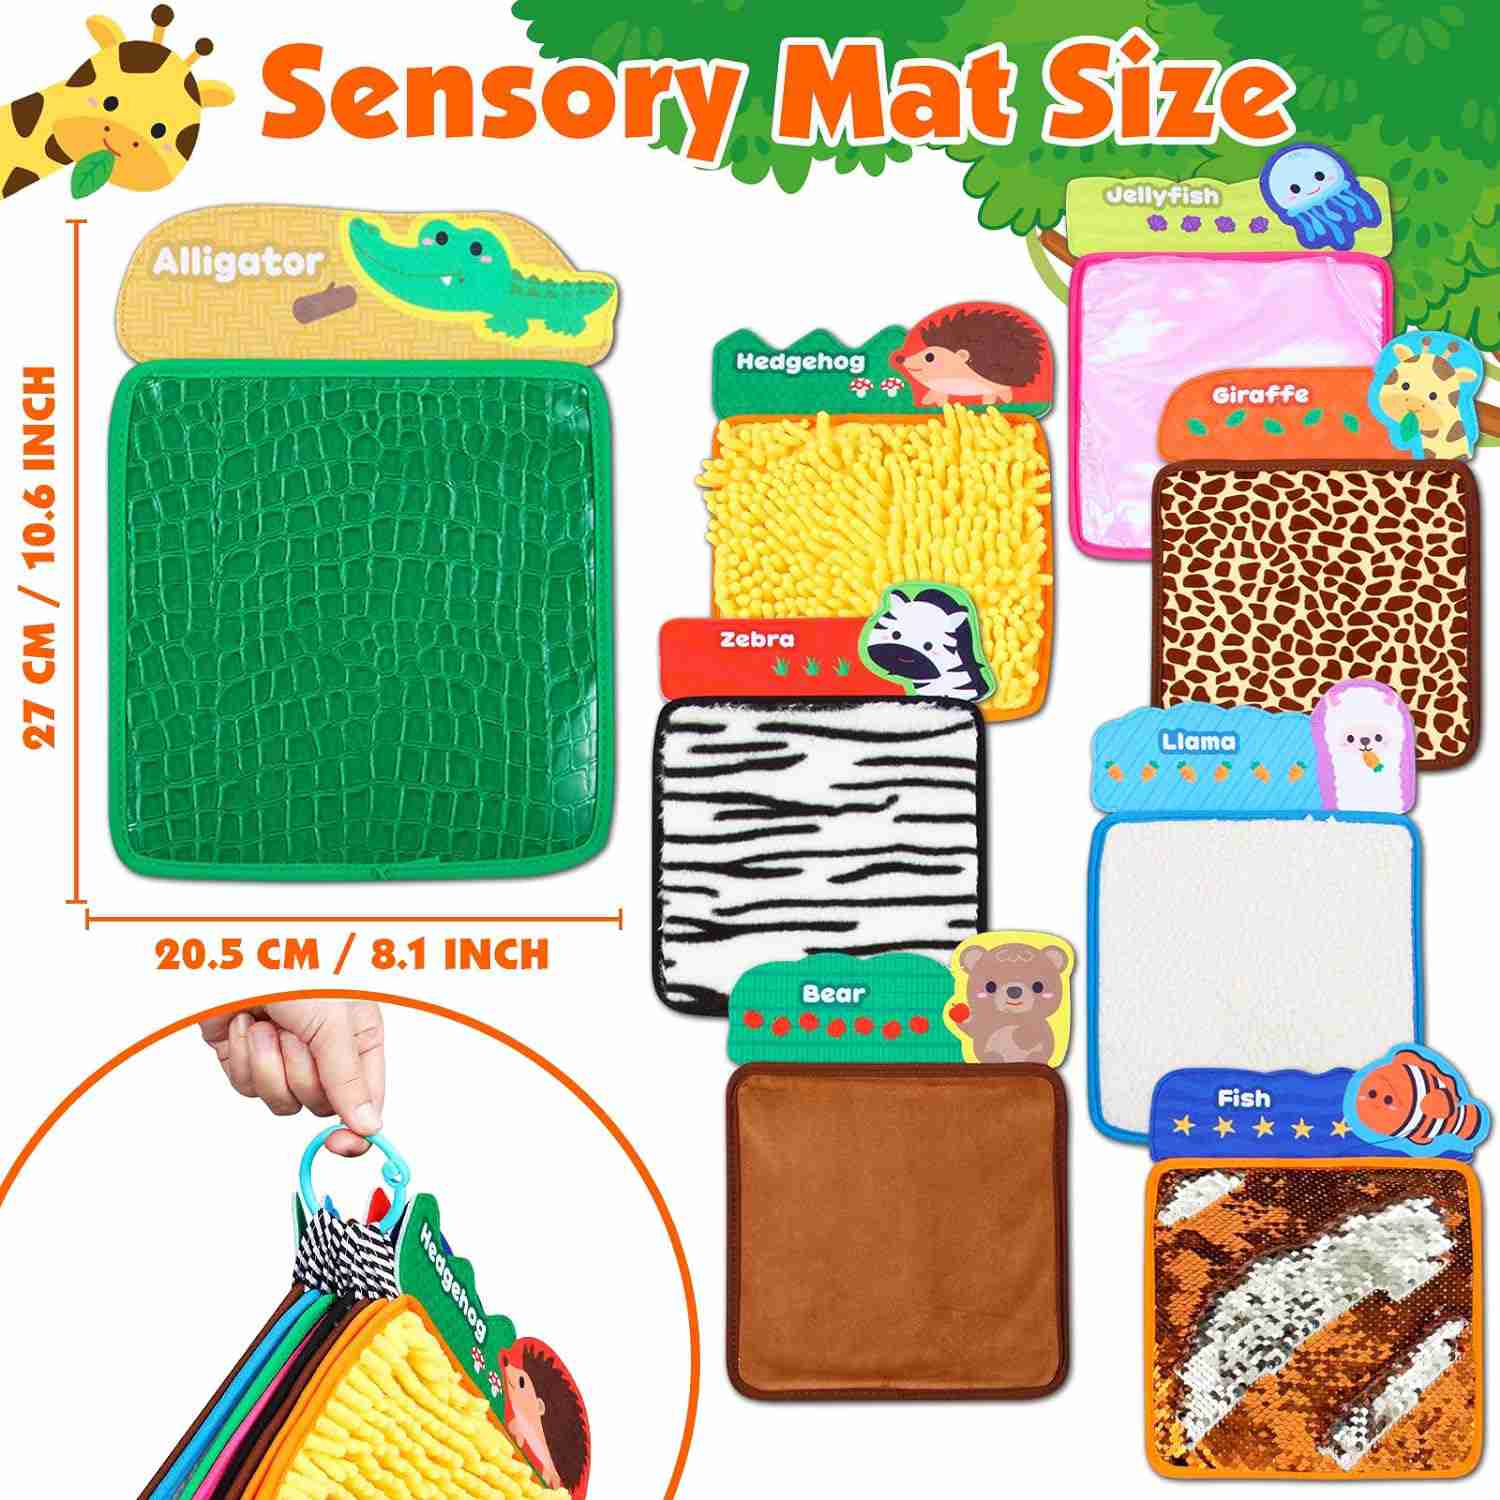 sensory-mats for cheap